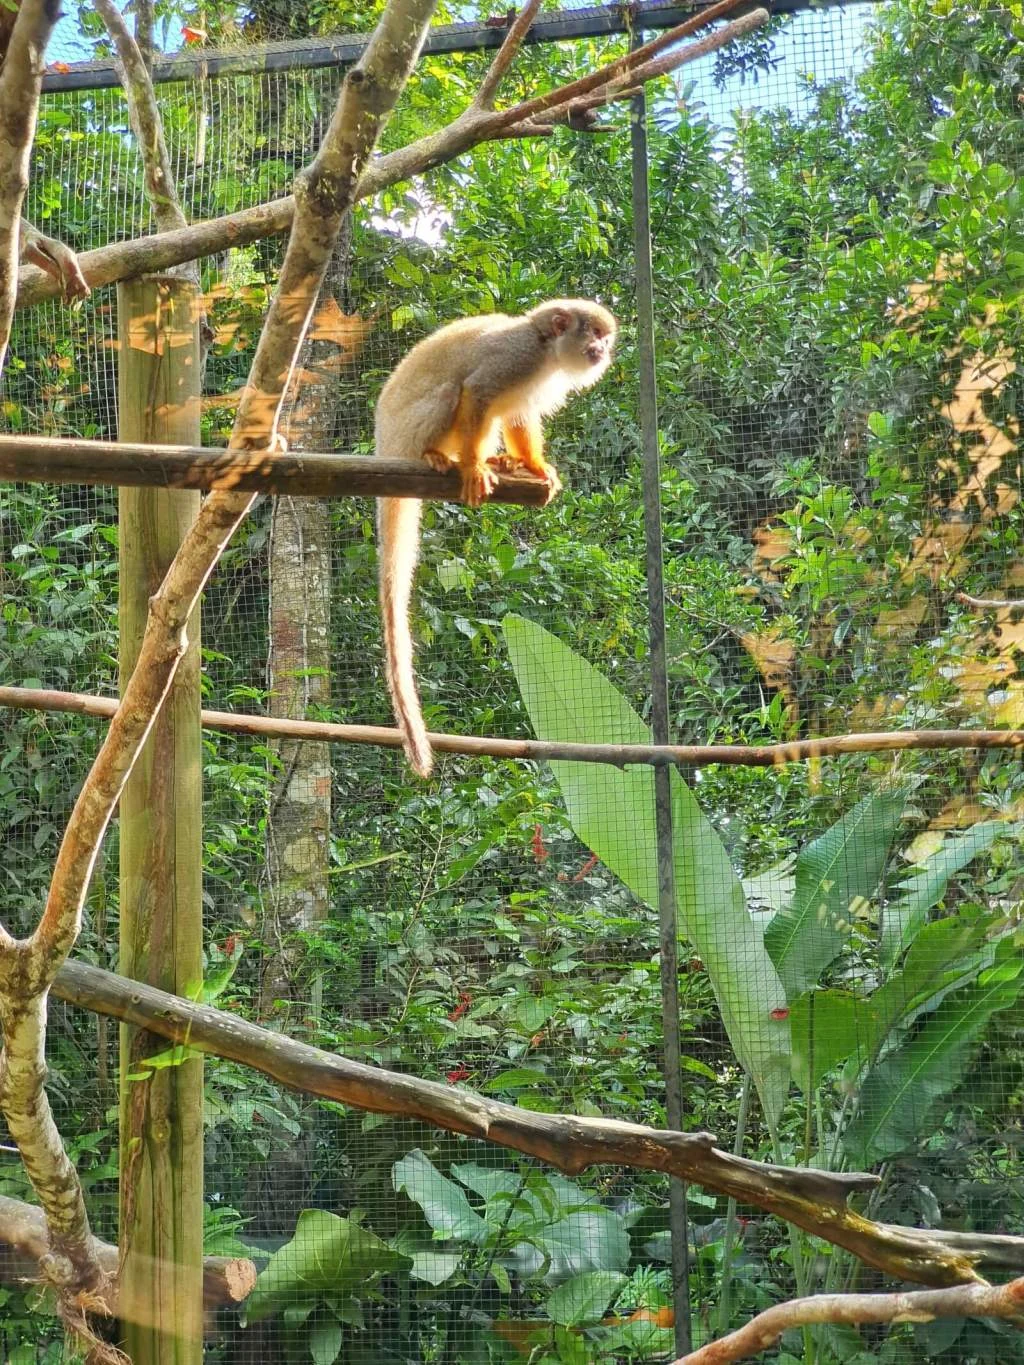 Singe Zoo Guadeloupe - Parc des Mamelles